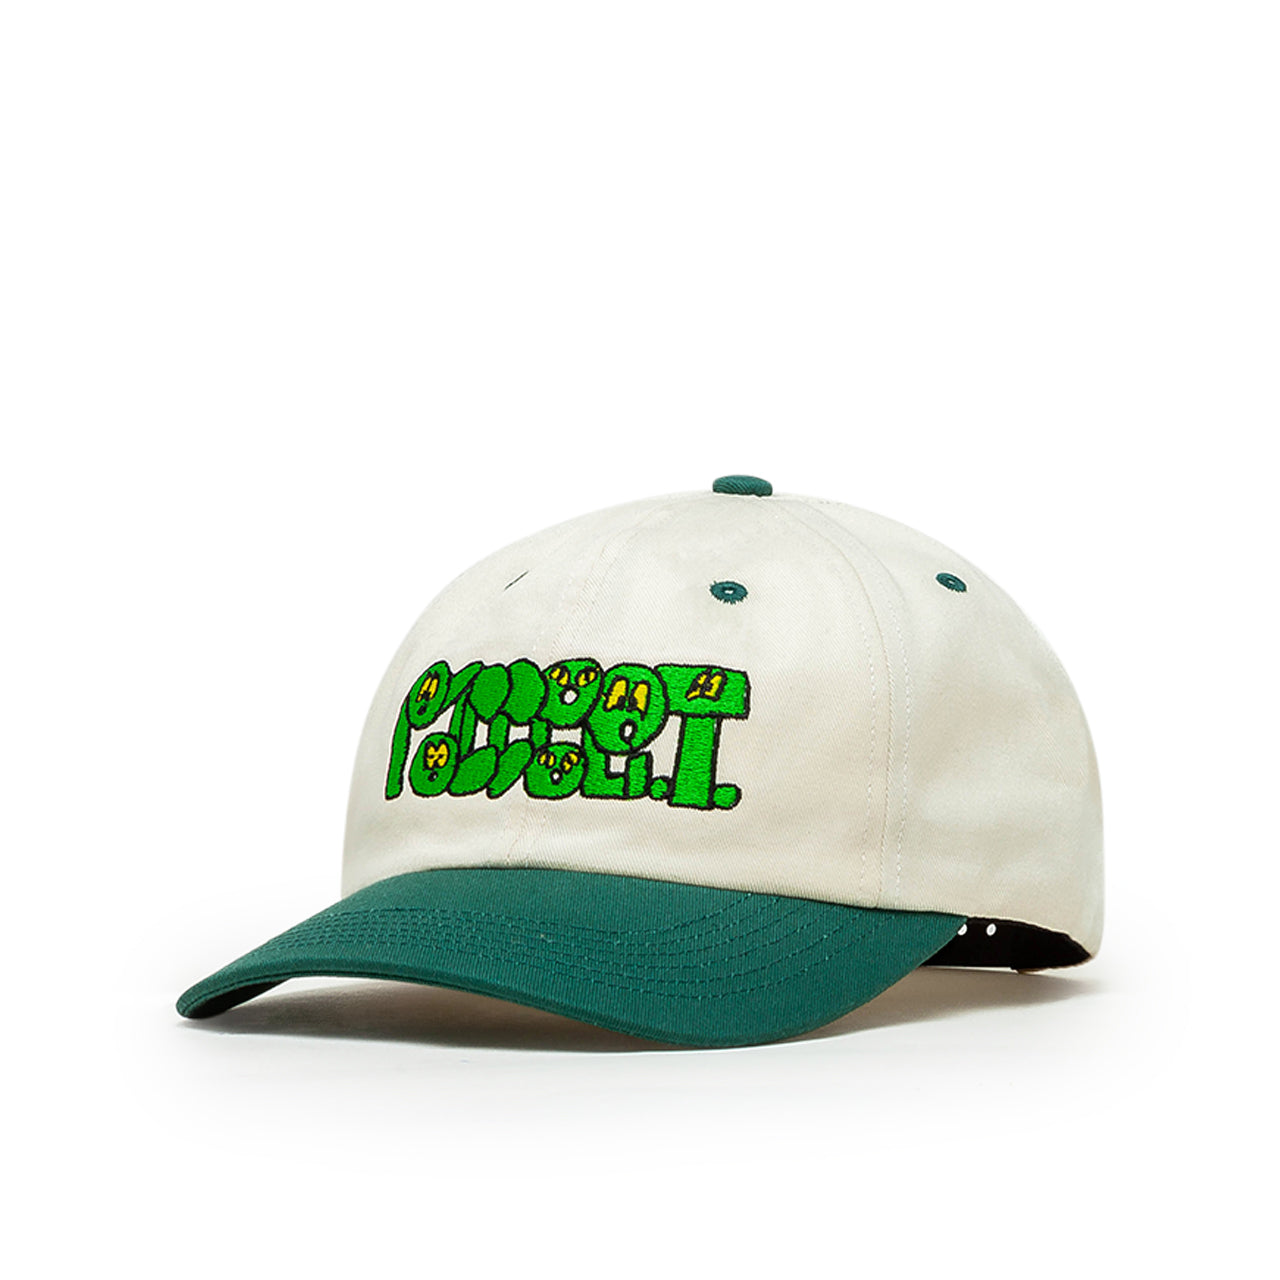 rassvet woven logo cap (white / green)